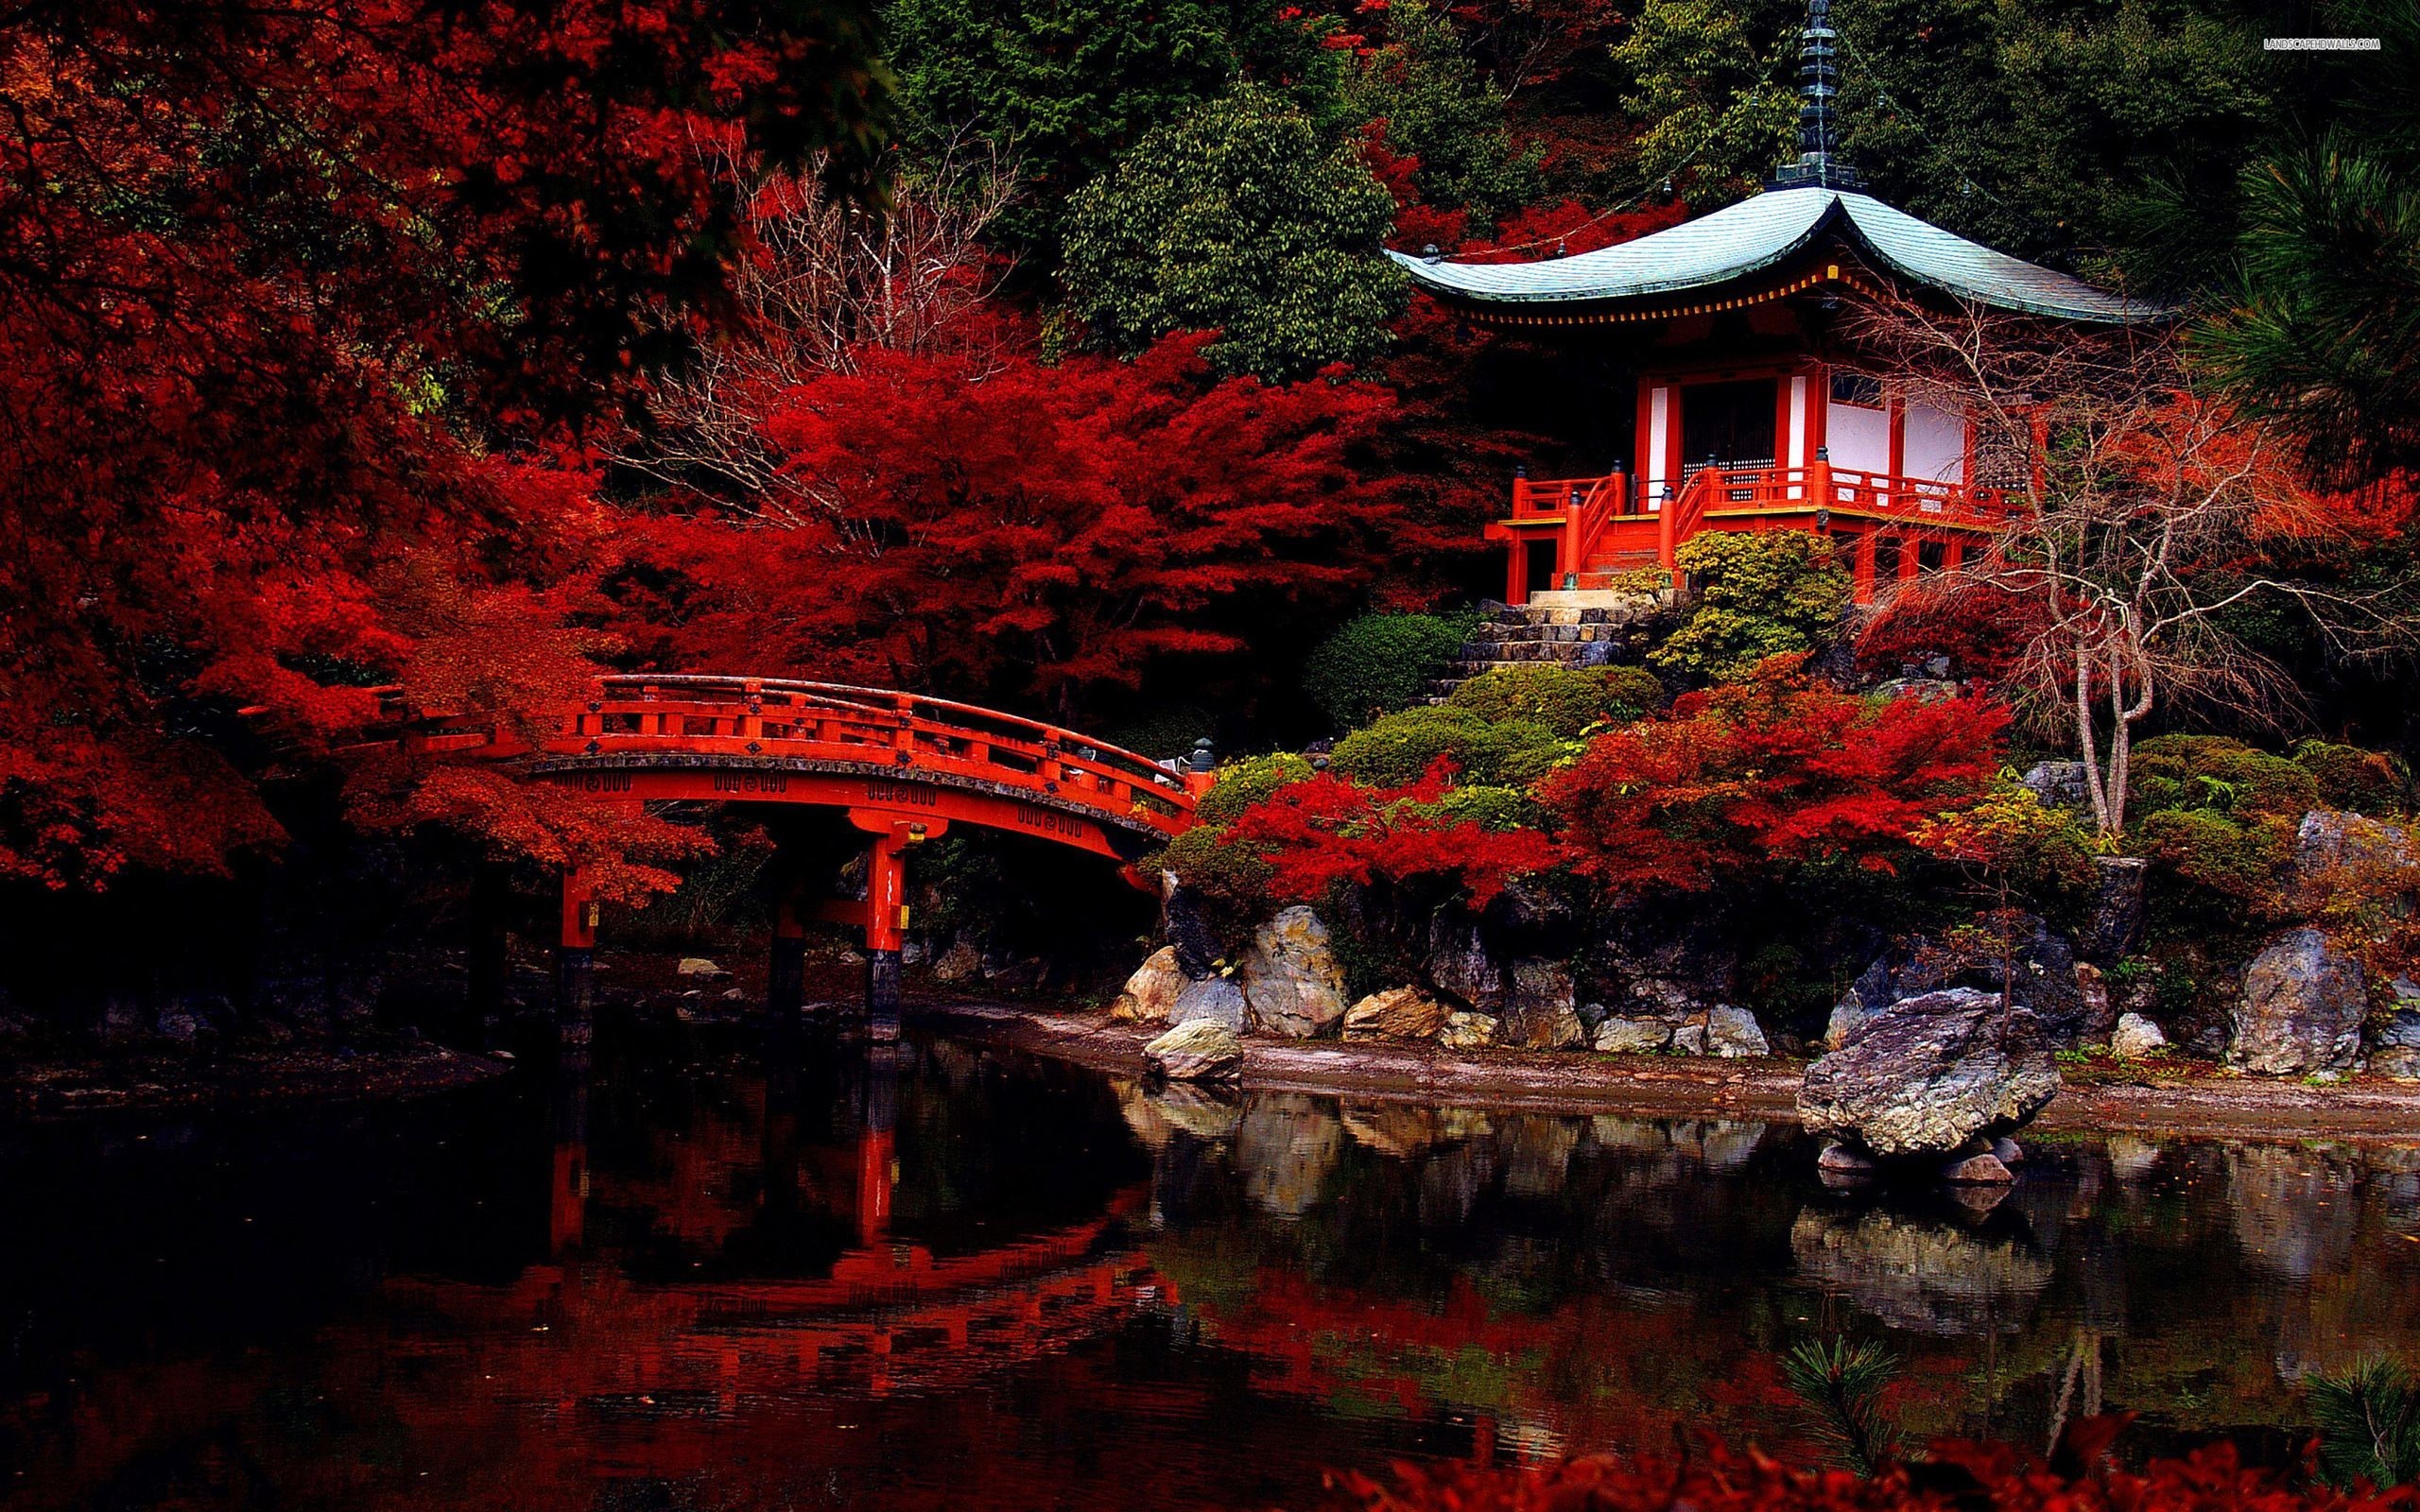 Hình ảnh Nhật Bản tuyệt đẹp - Ảnh đẹp thiên nhiên